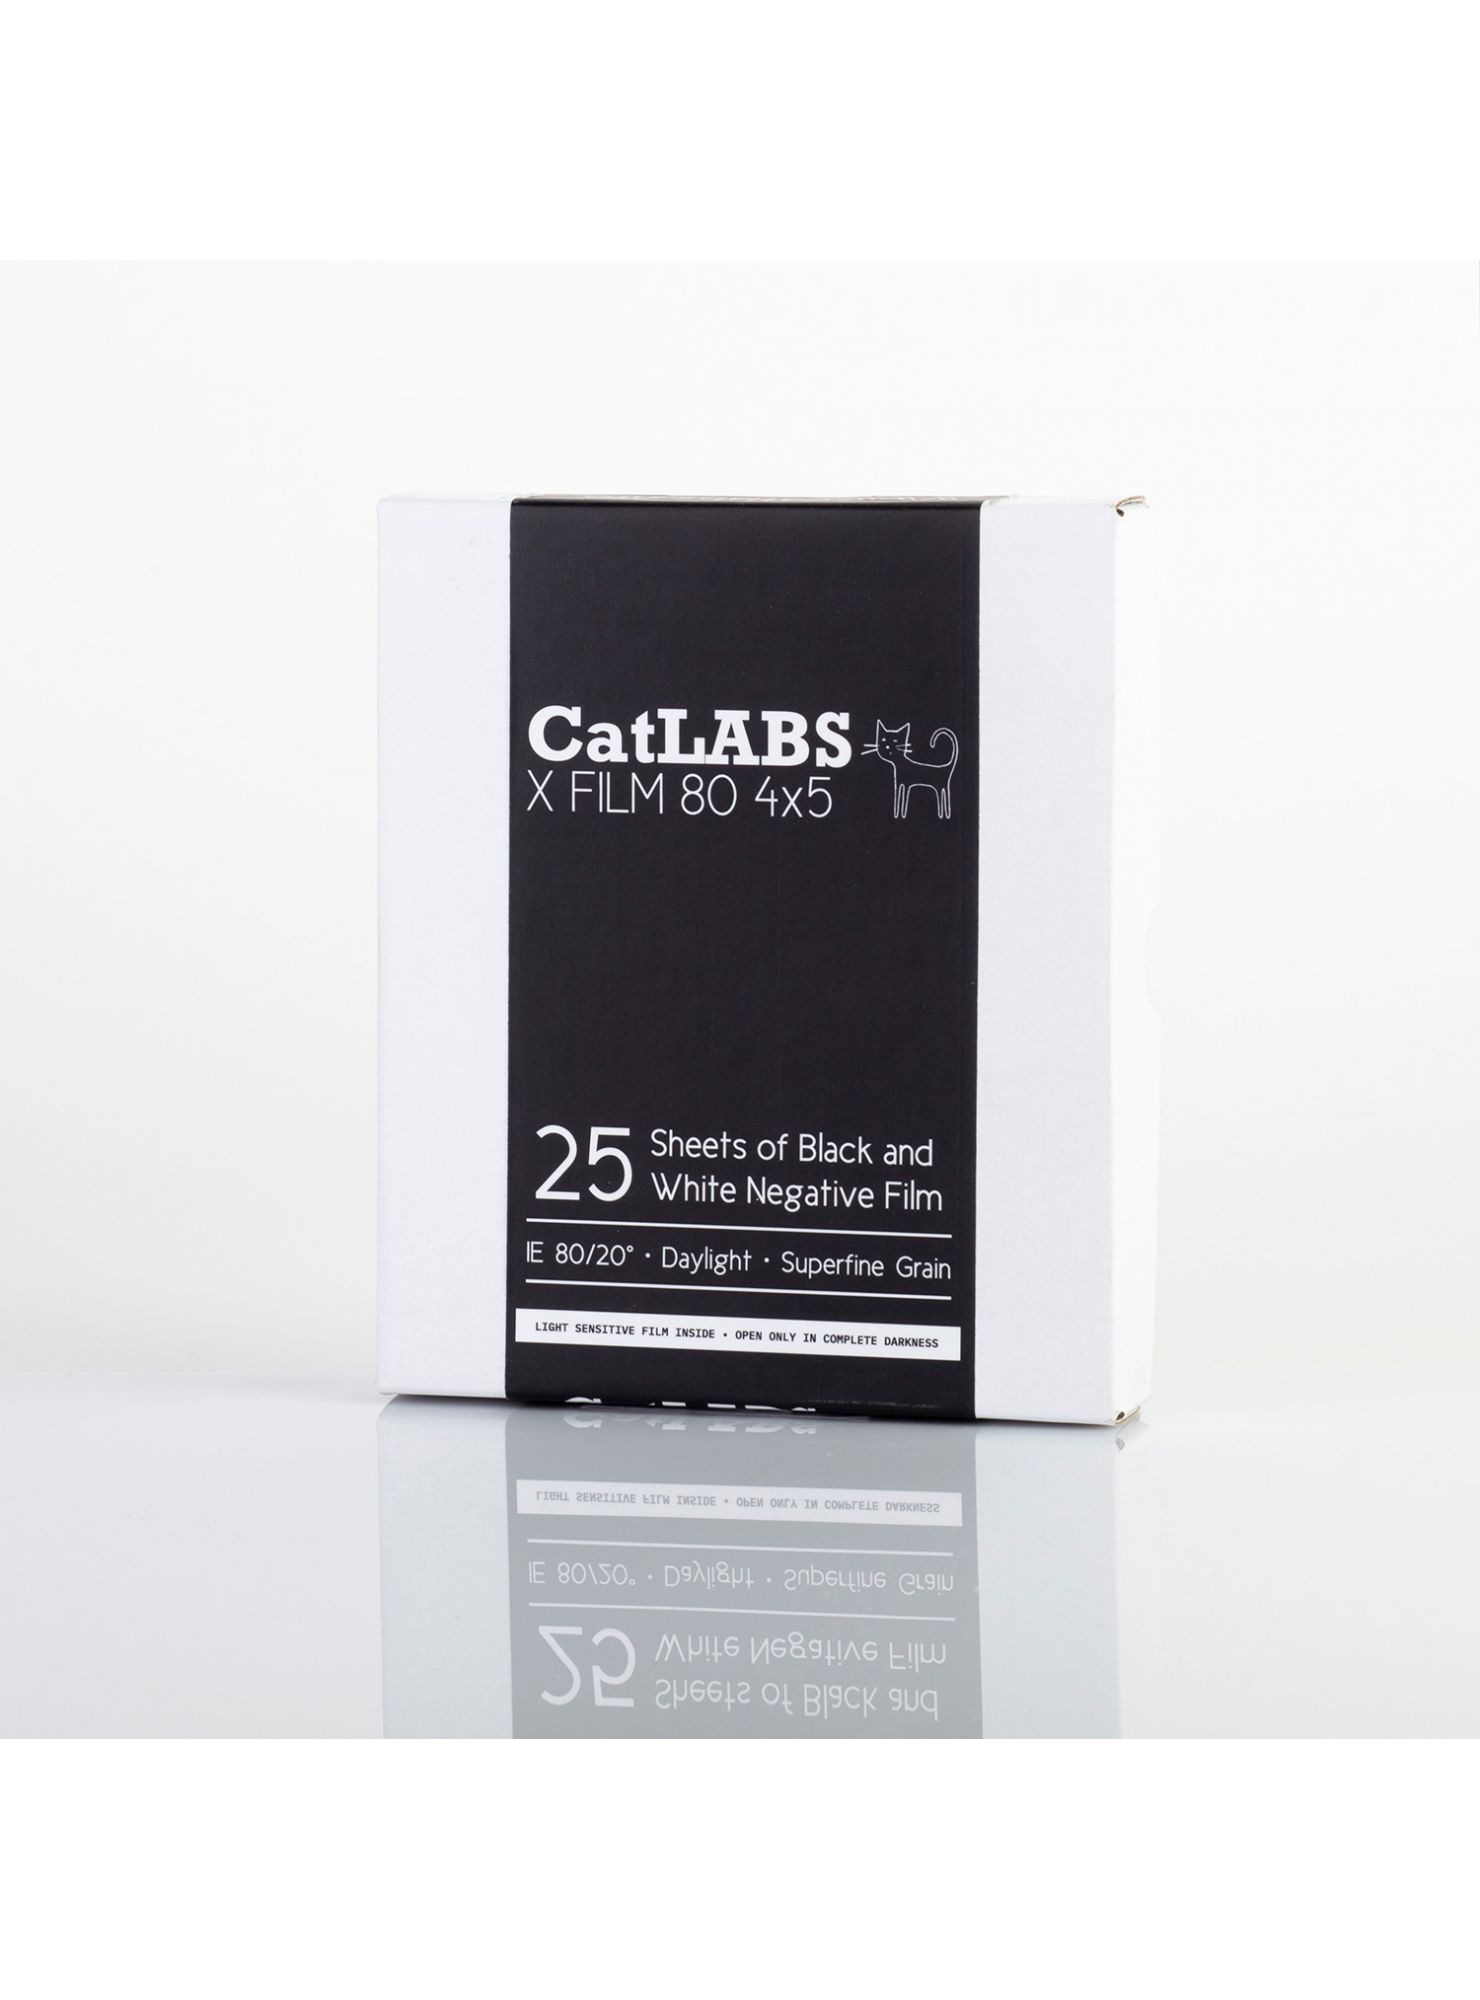 CATLABS - X FILM 80 - 4x5 / 25